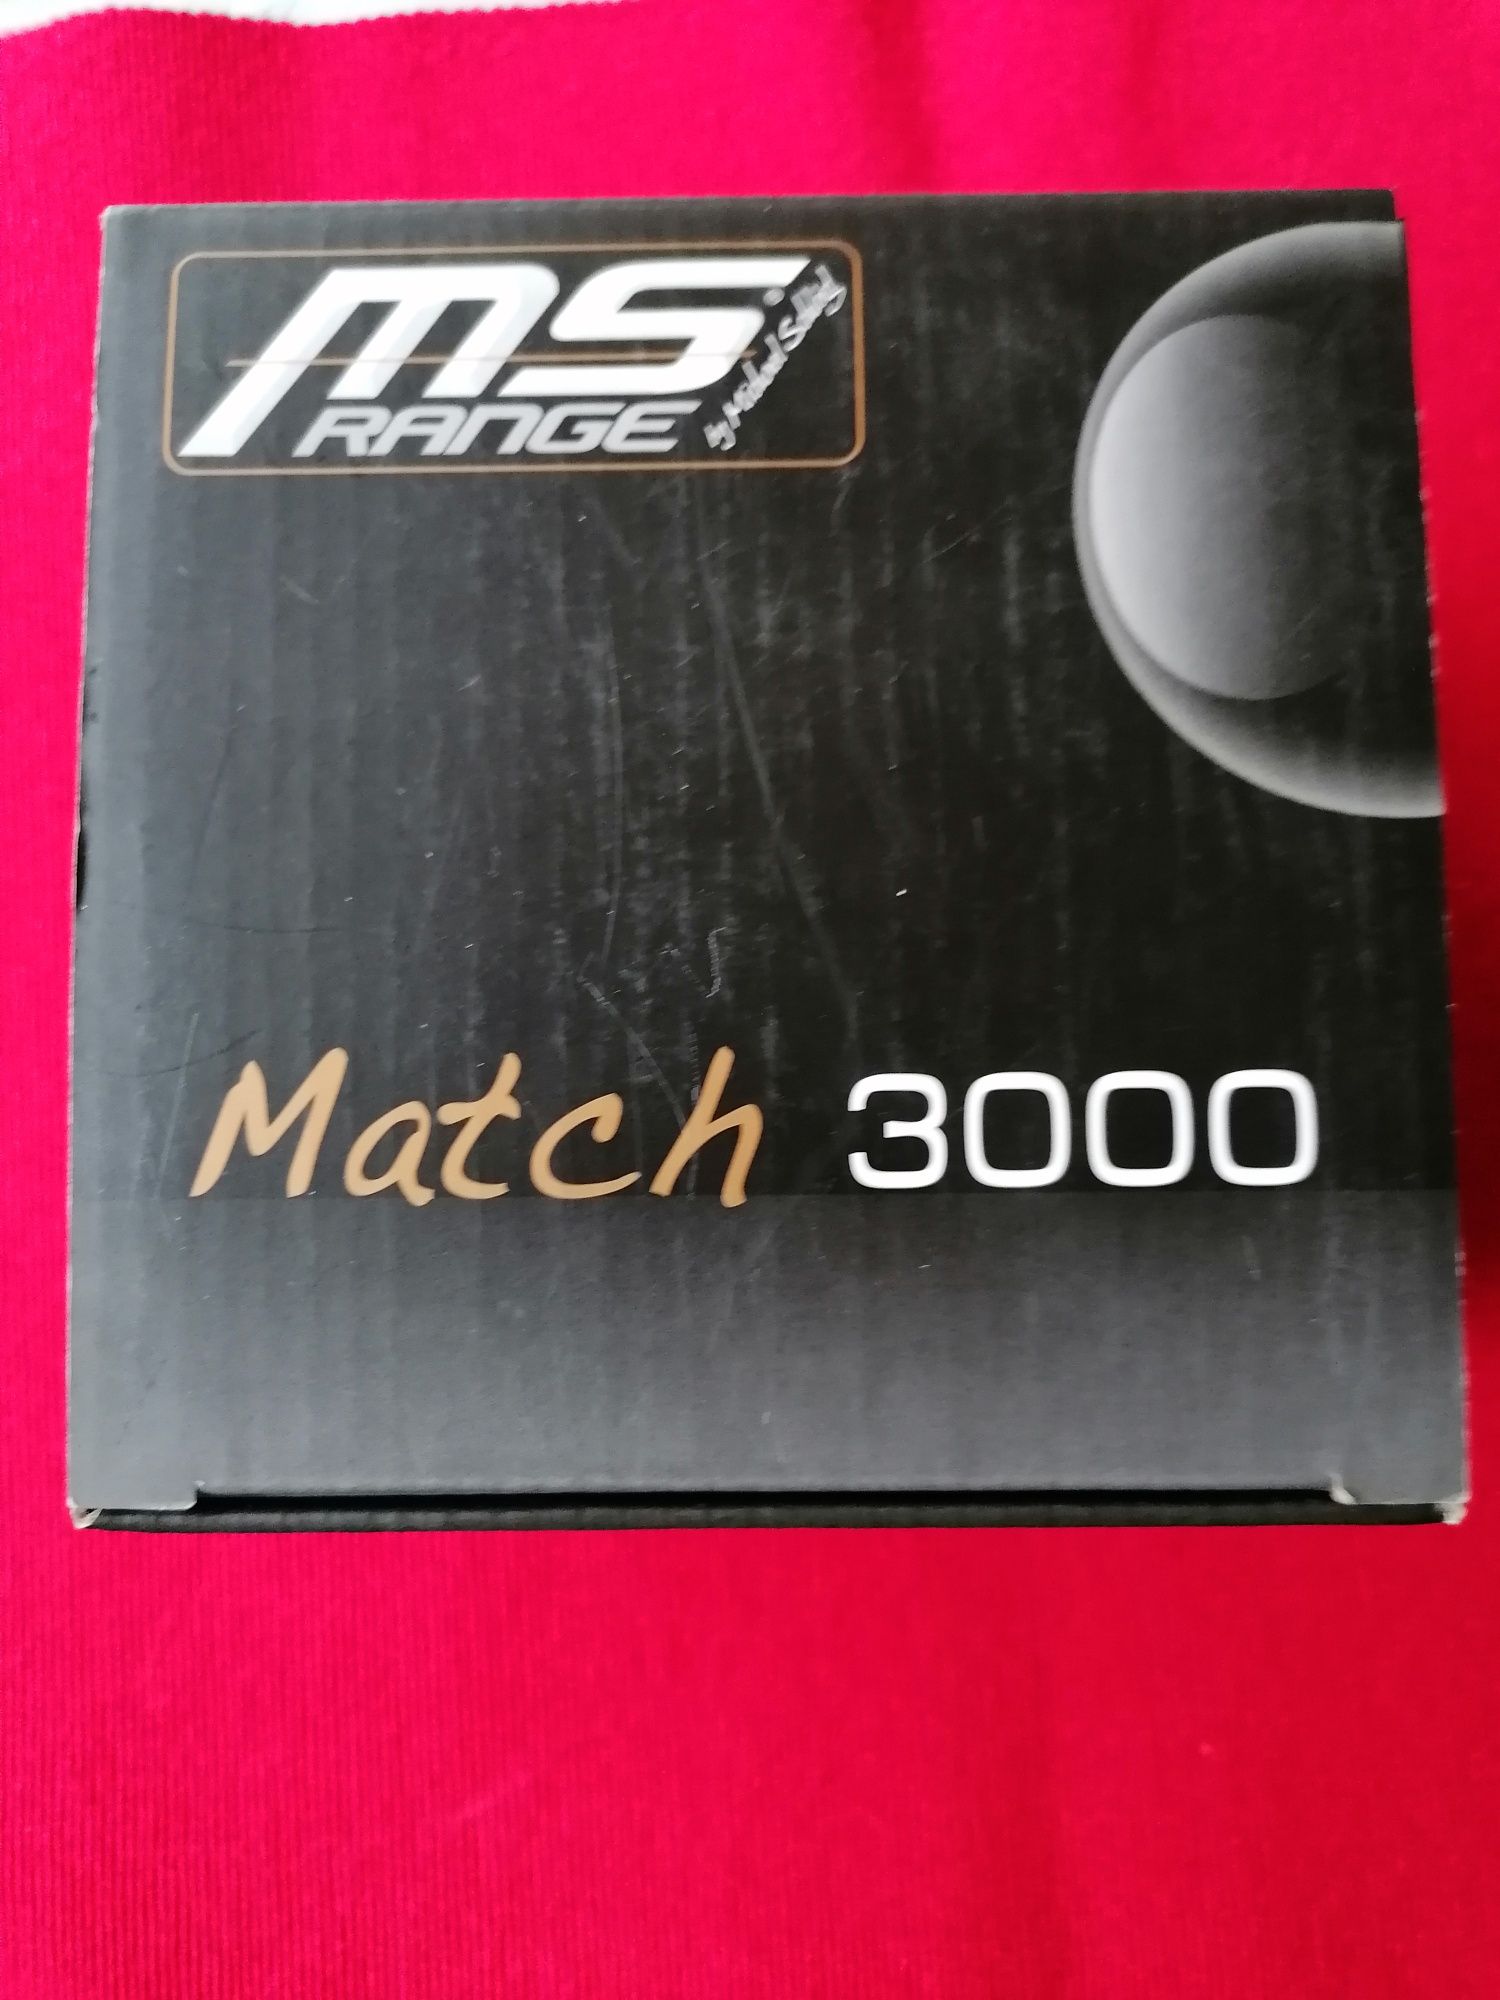 Mulineta MS RANGE Match 3000